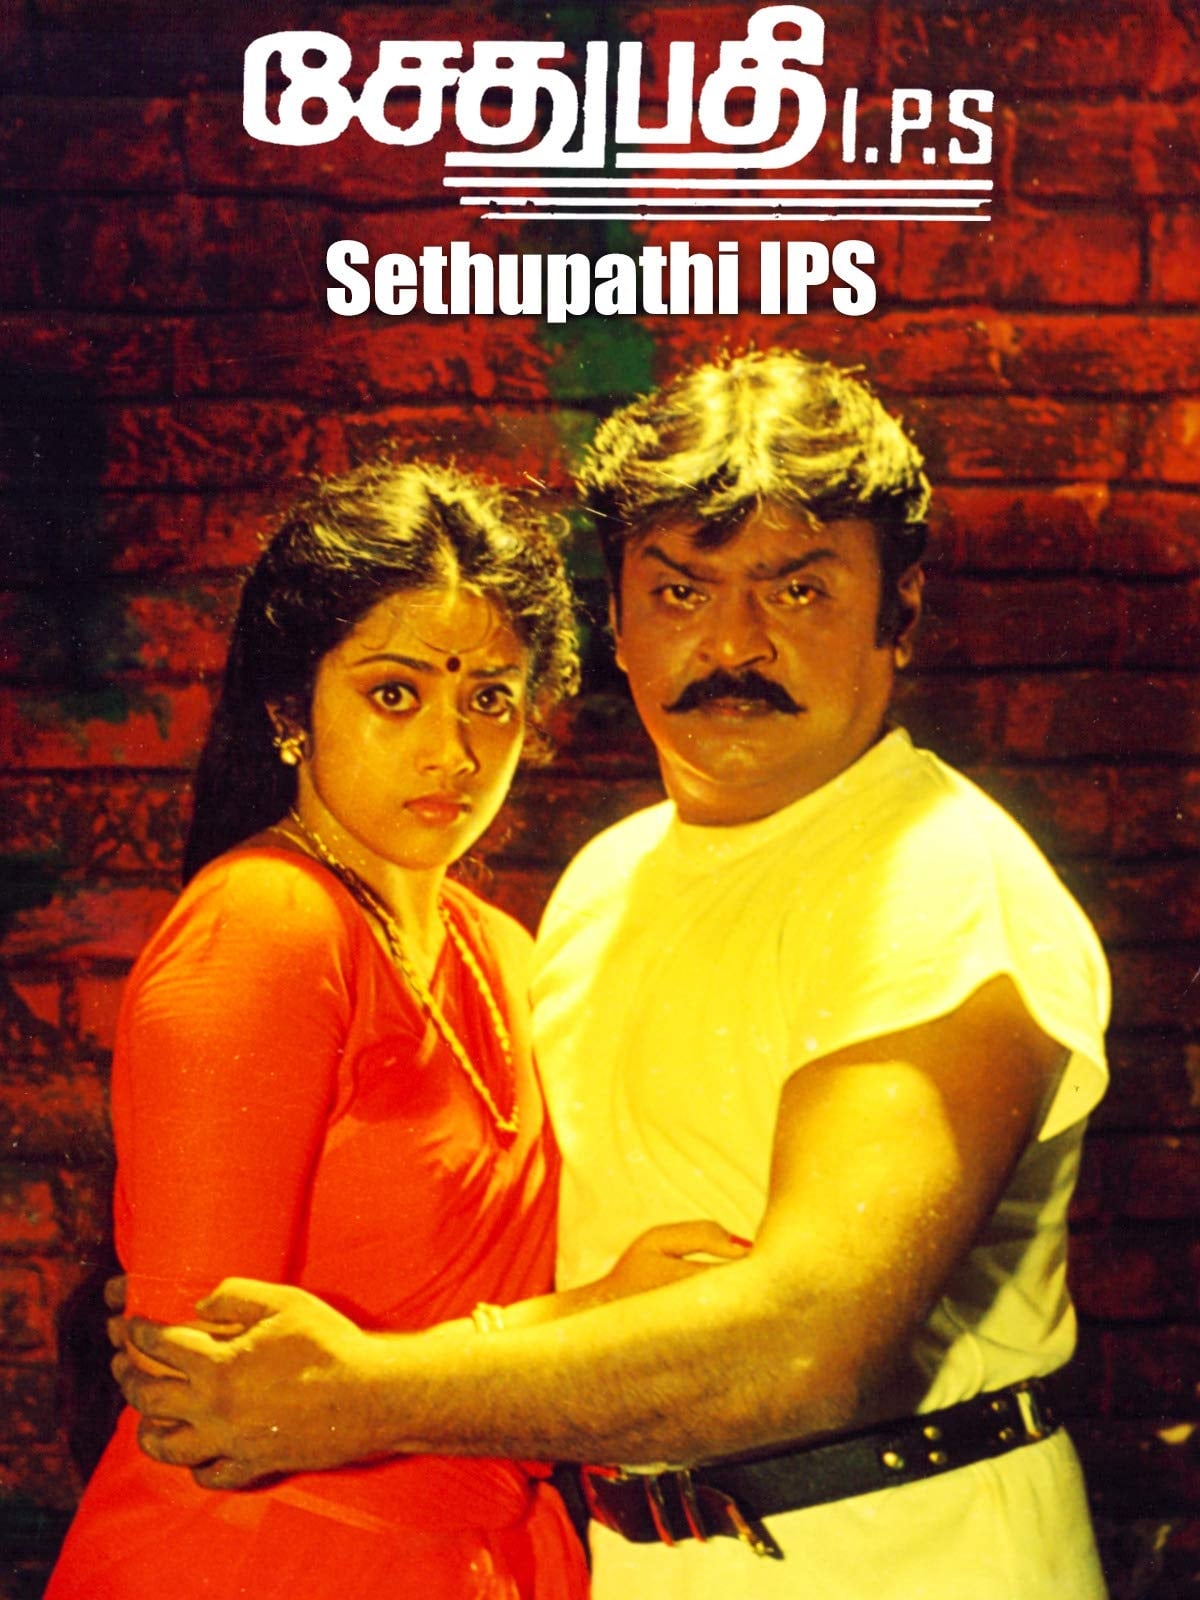 Sethupathi IPS